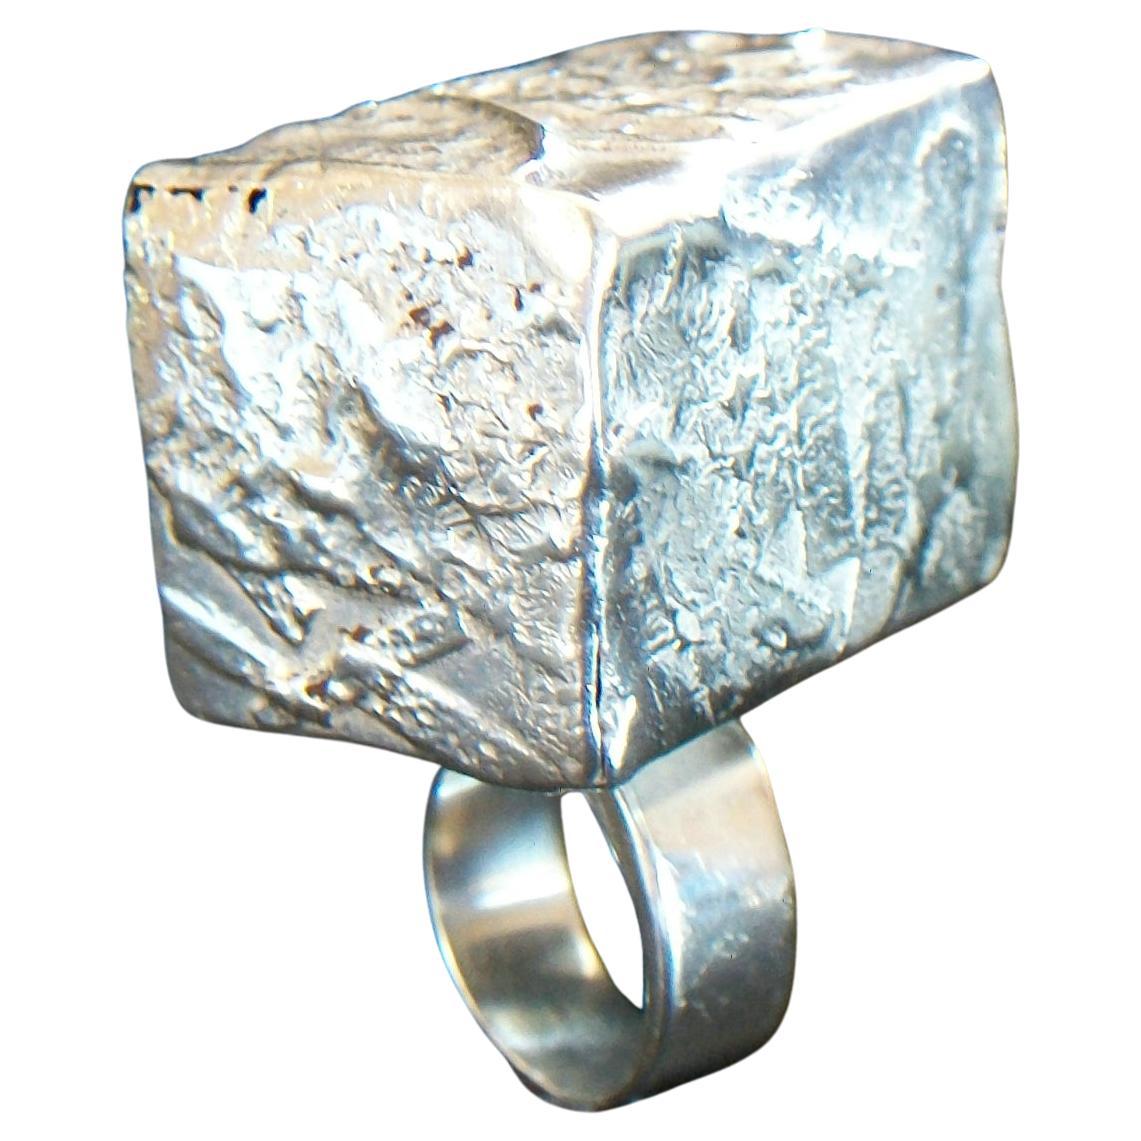 Massive Modernist Fine Silver Statement Ring - 950/1000 - Mexico - Circa 1970's For Sale